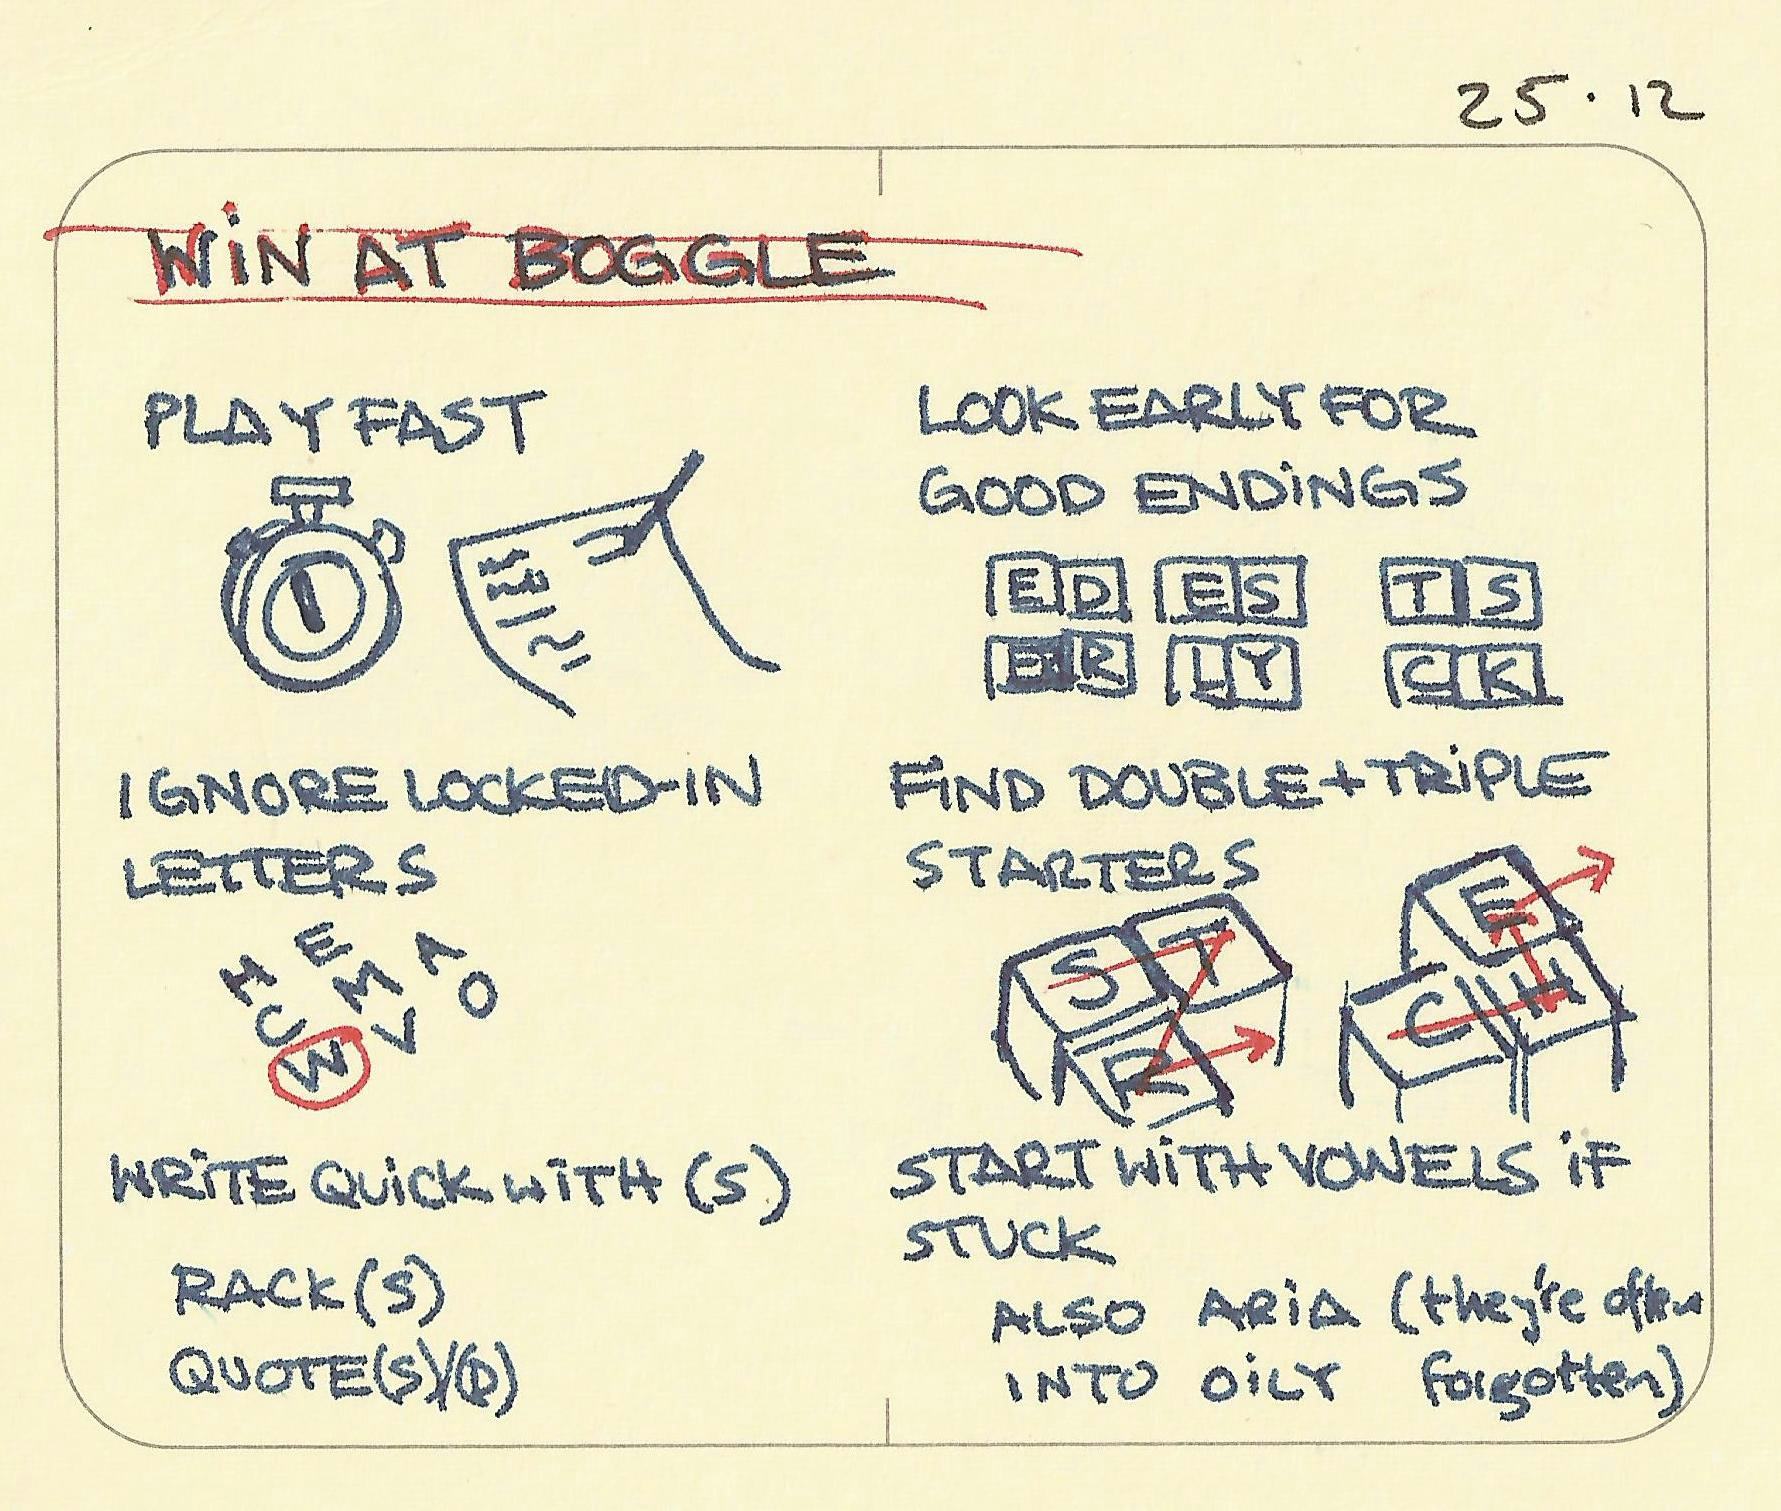 Win at Boggle - Sketchplanations